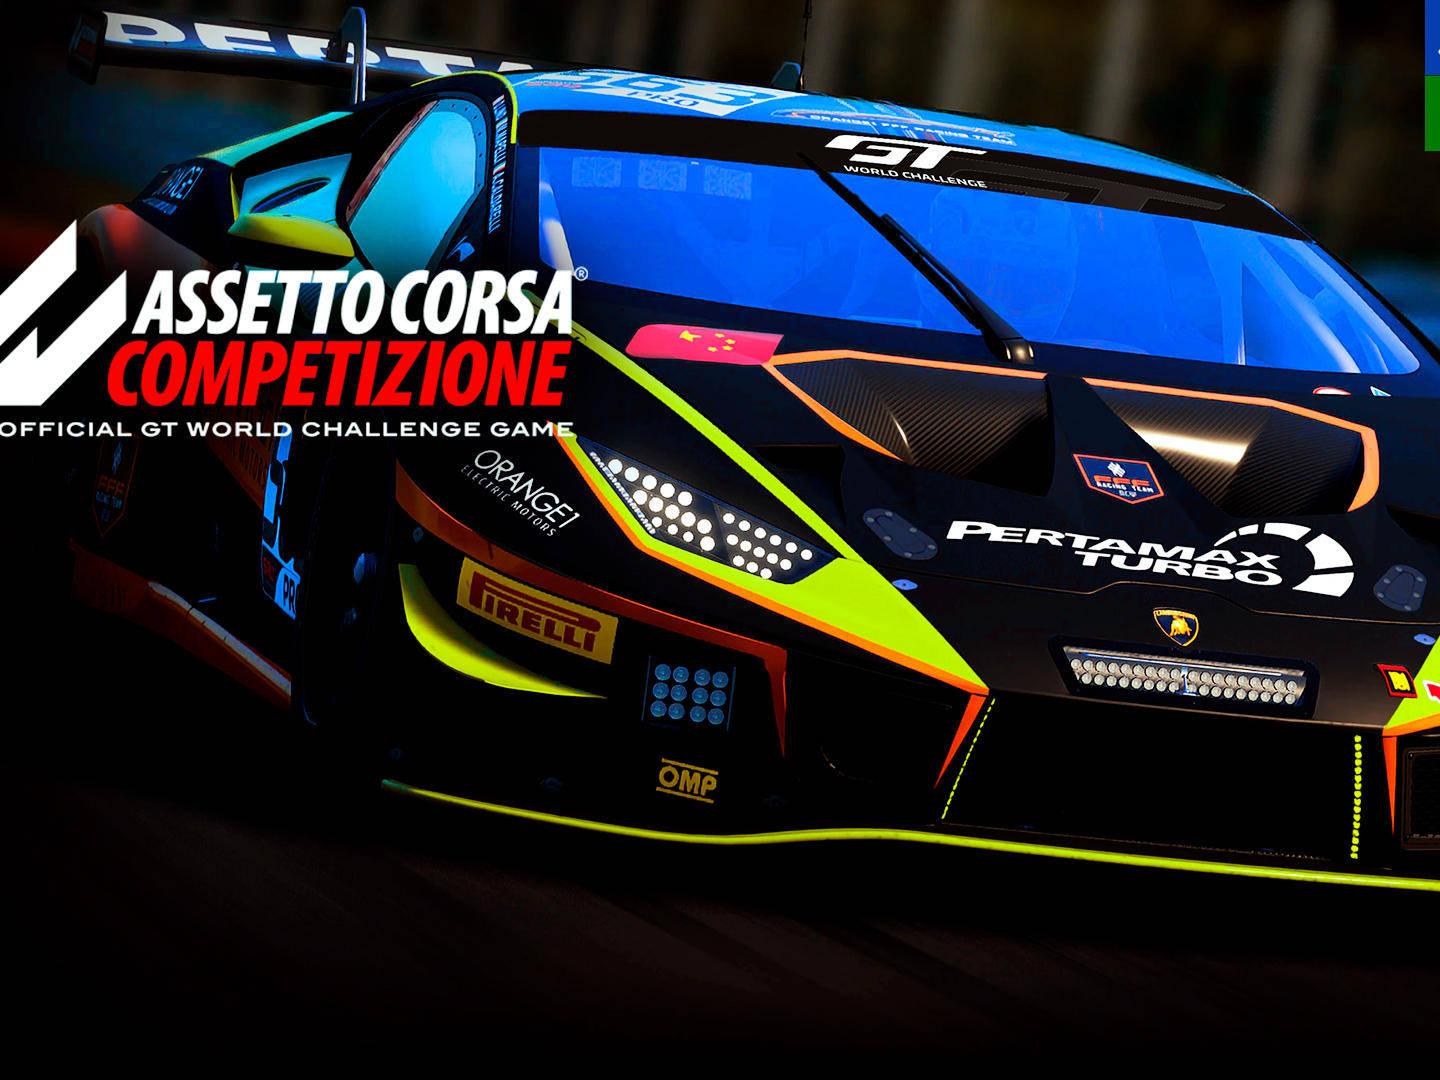 Assetto Corsa Competizione, caballos de potencia en las nuevas consolas